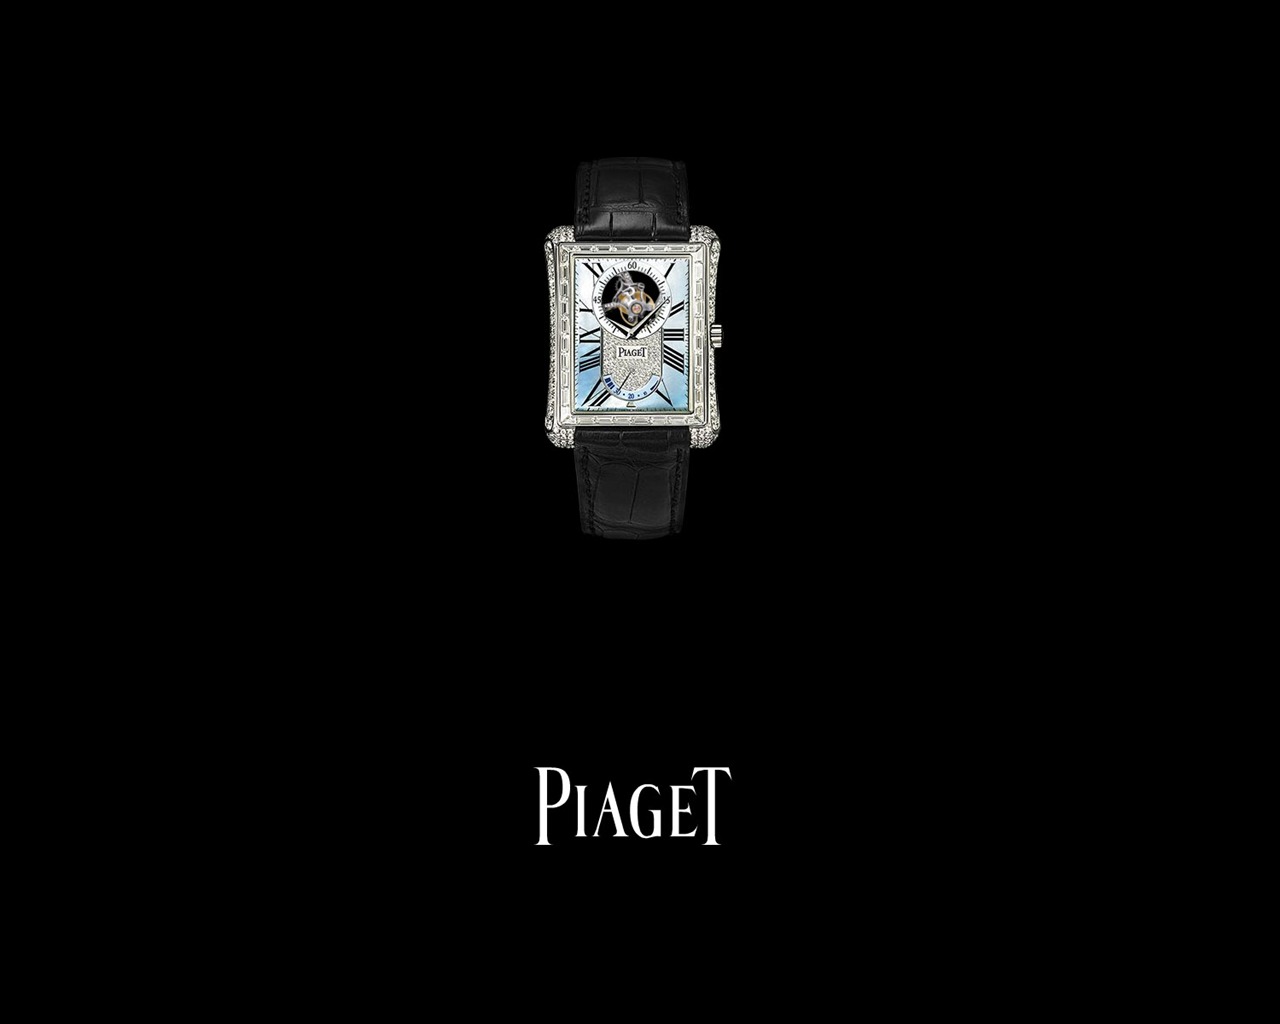 피아제 다이아몬드 시계 벽지 (3) #14 - 1280x1024